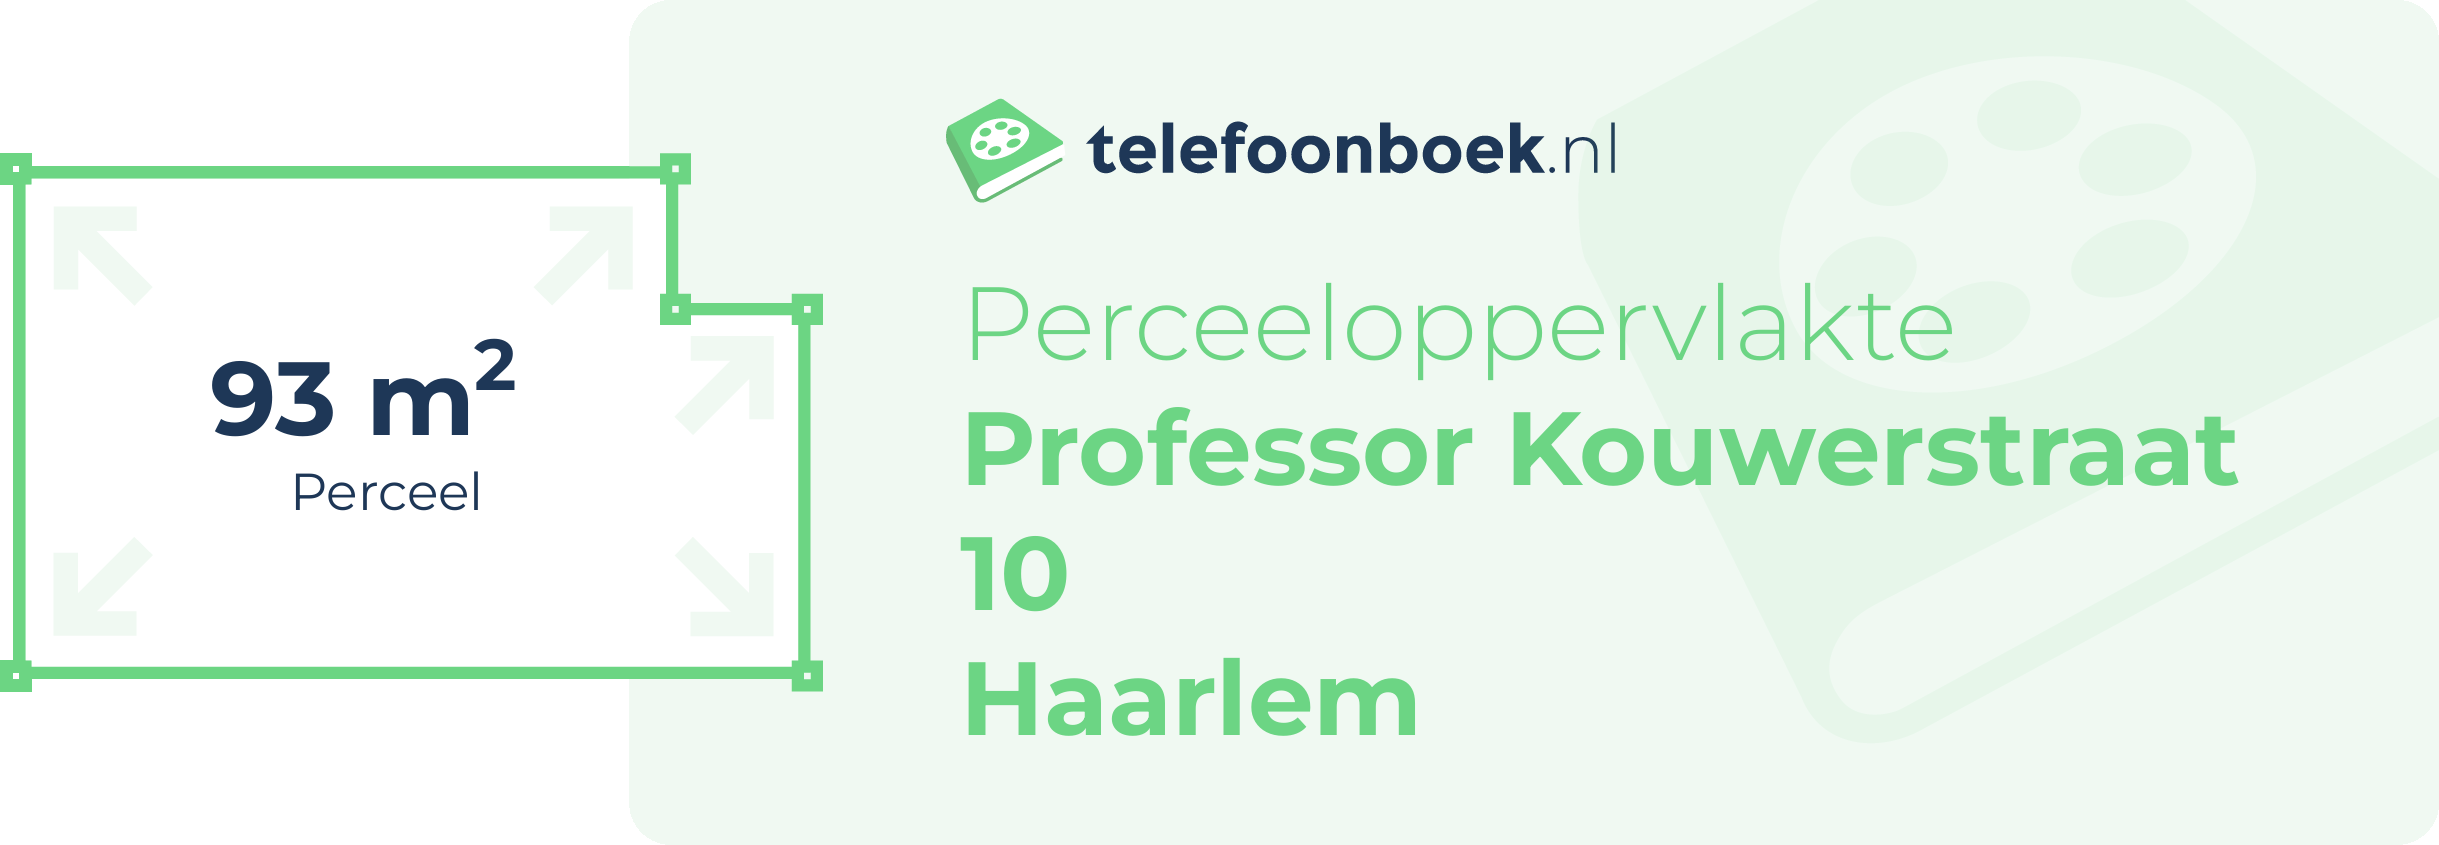 Perceeloppervlakte Professor Kouwerstraat 10 Haarlem